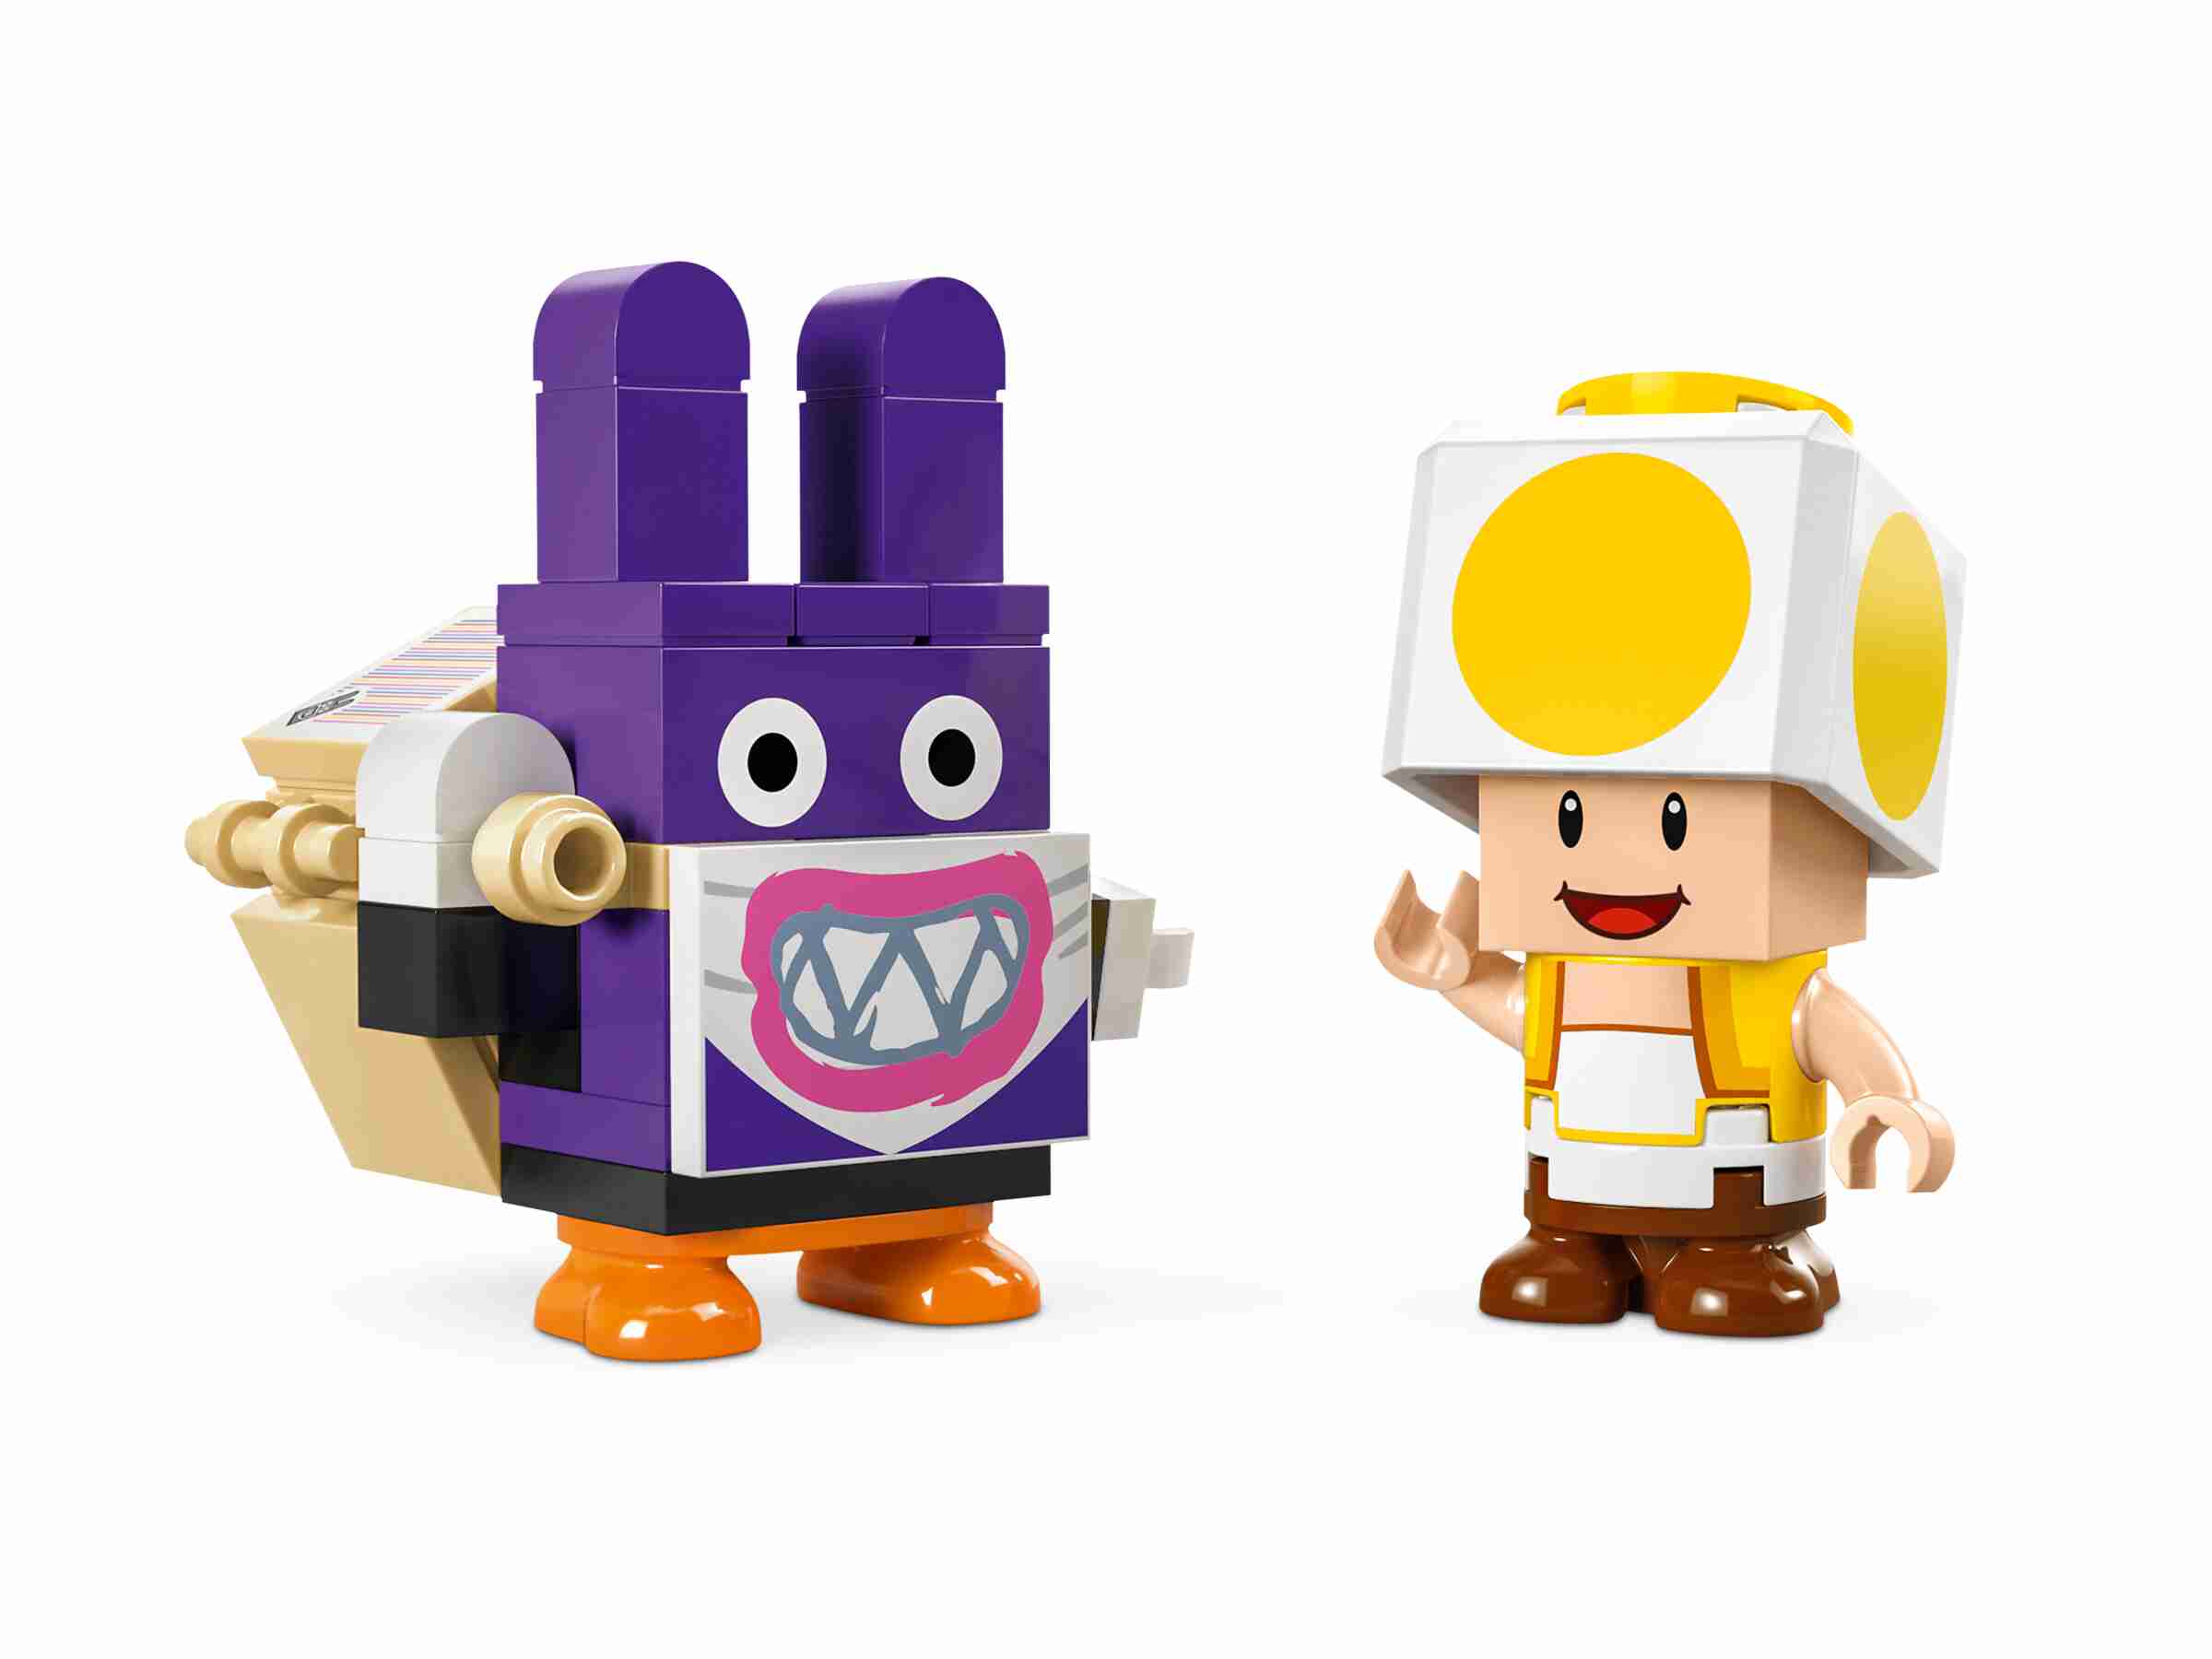 LEGO 71429 Super Mario Mopsie in Toads Laden – Erweiterungsset, gelber Toad